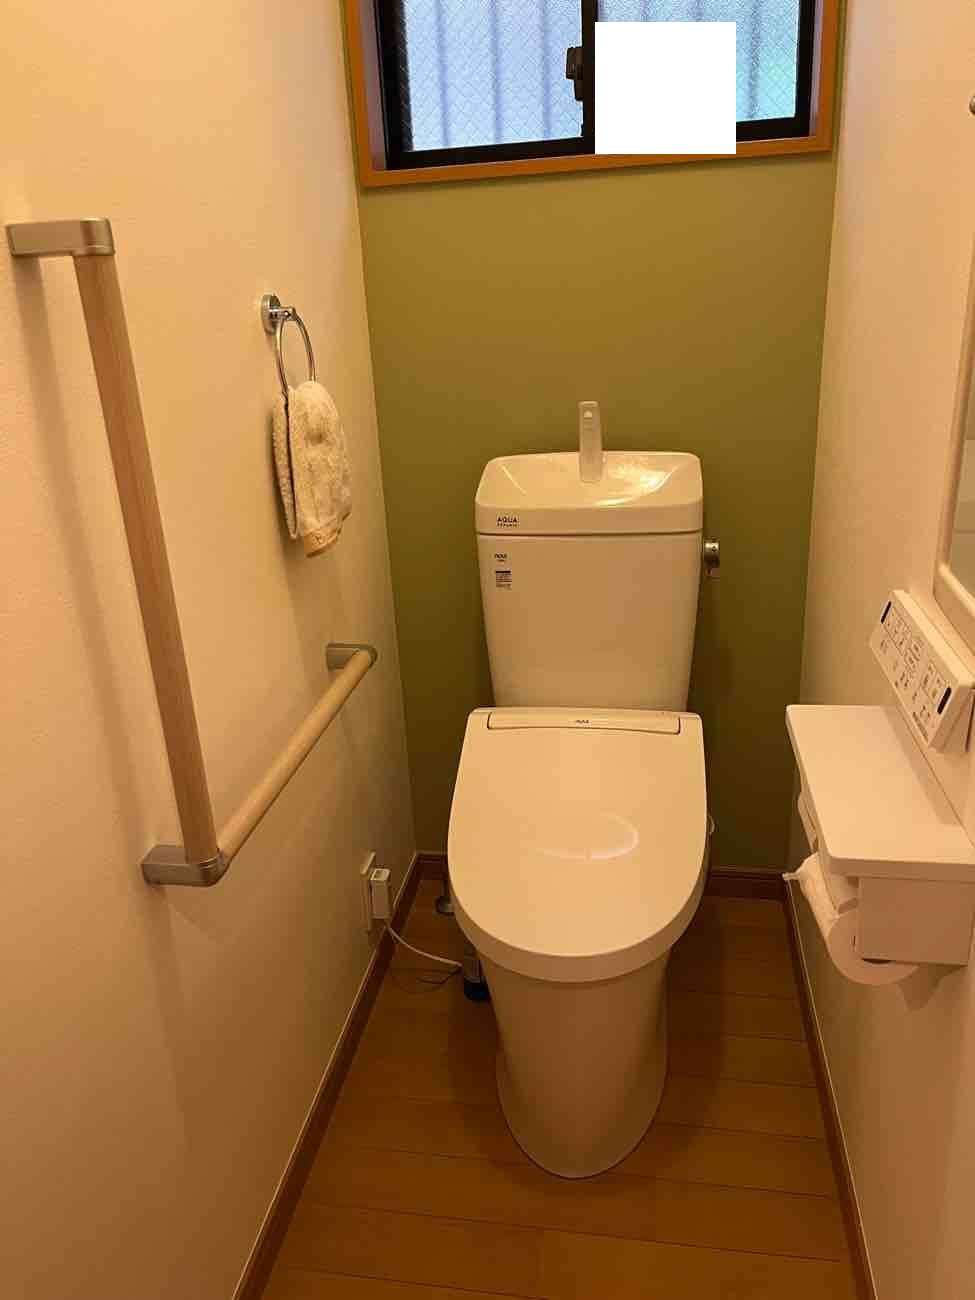 【埼玉県三郷市】M様邸トイレ交換工事が完了しました。LIXIL リクシル アメージュ 画像